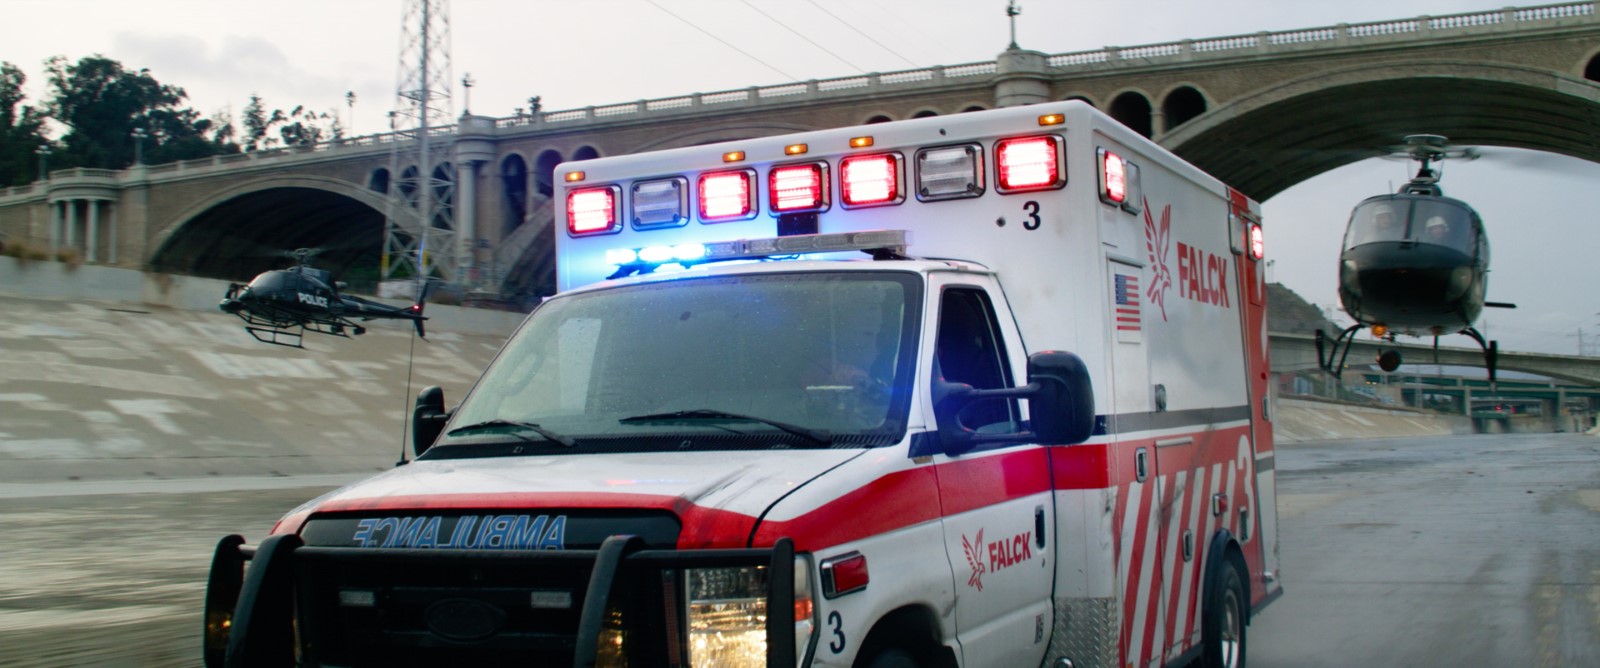 Szenenbild 4 vom Film Ambulance